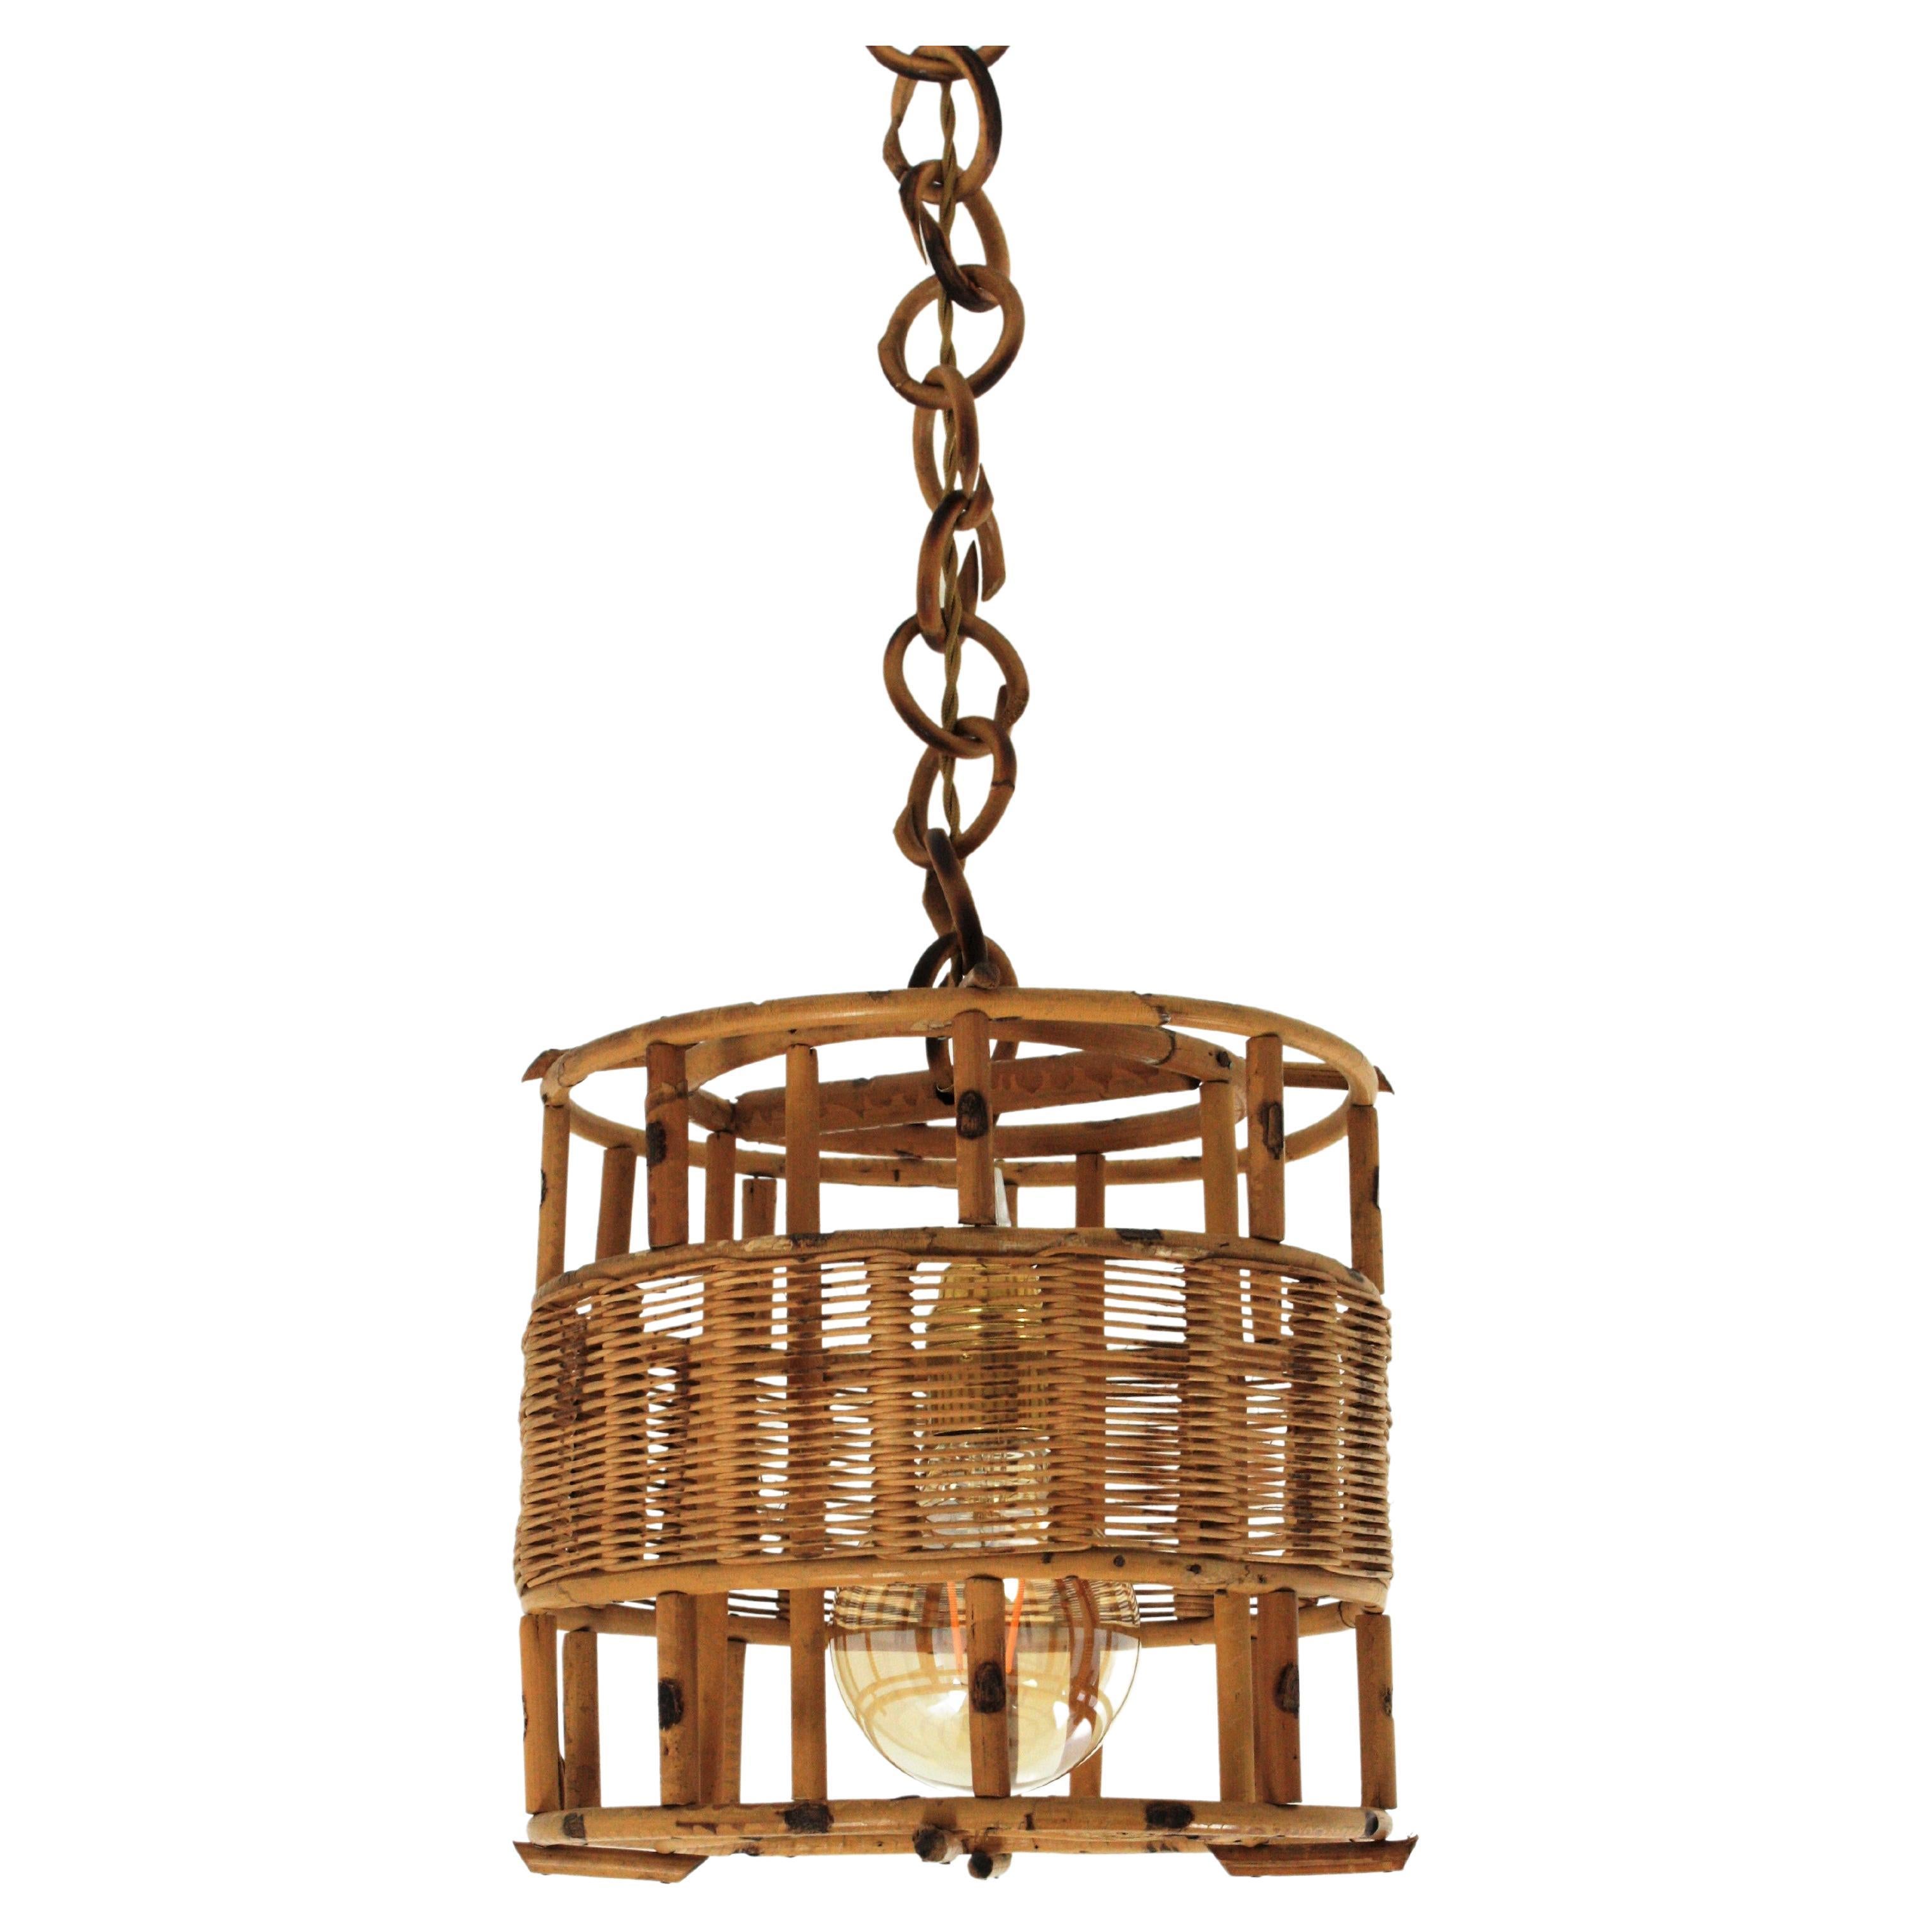 Lampe pendante ou lanterne moderniste française en rotin. France, années 1950-1960
Suspension en rotin en forme de tambour, fabriquée à la main, avec des détails en osier pour diffuser la lumière.
Ce lustre en rotin accrocheur présente une